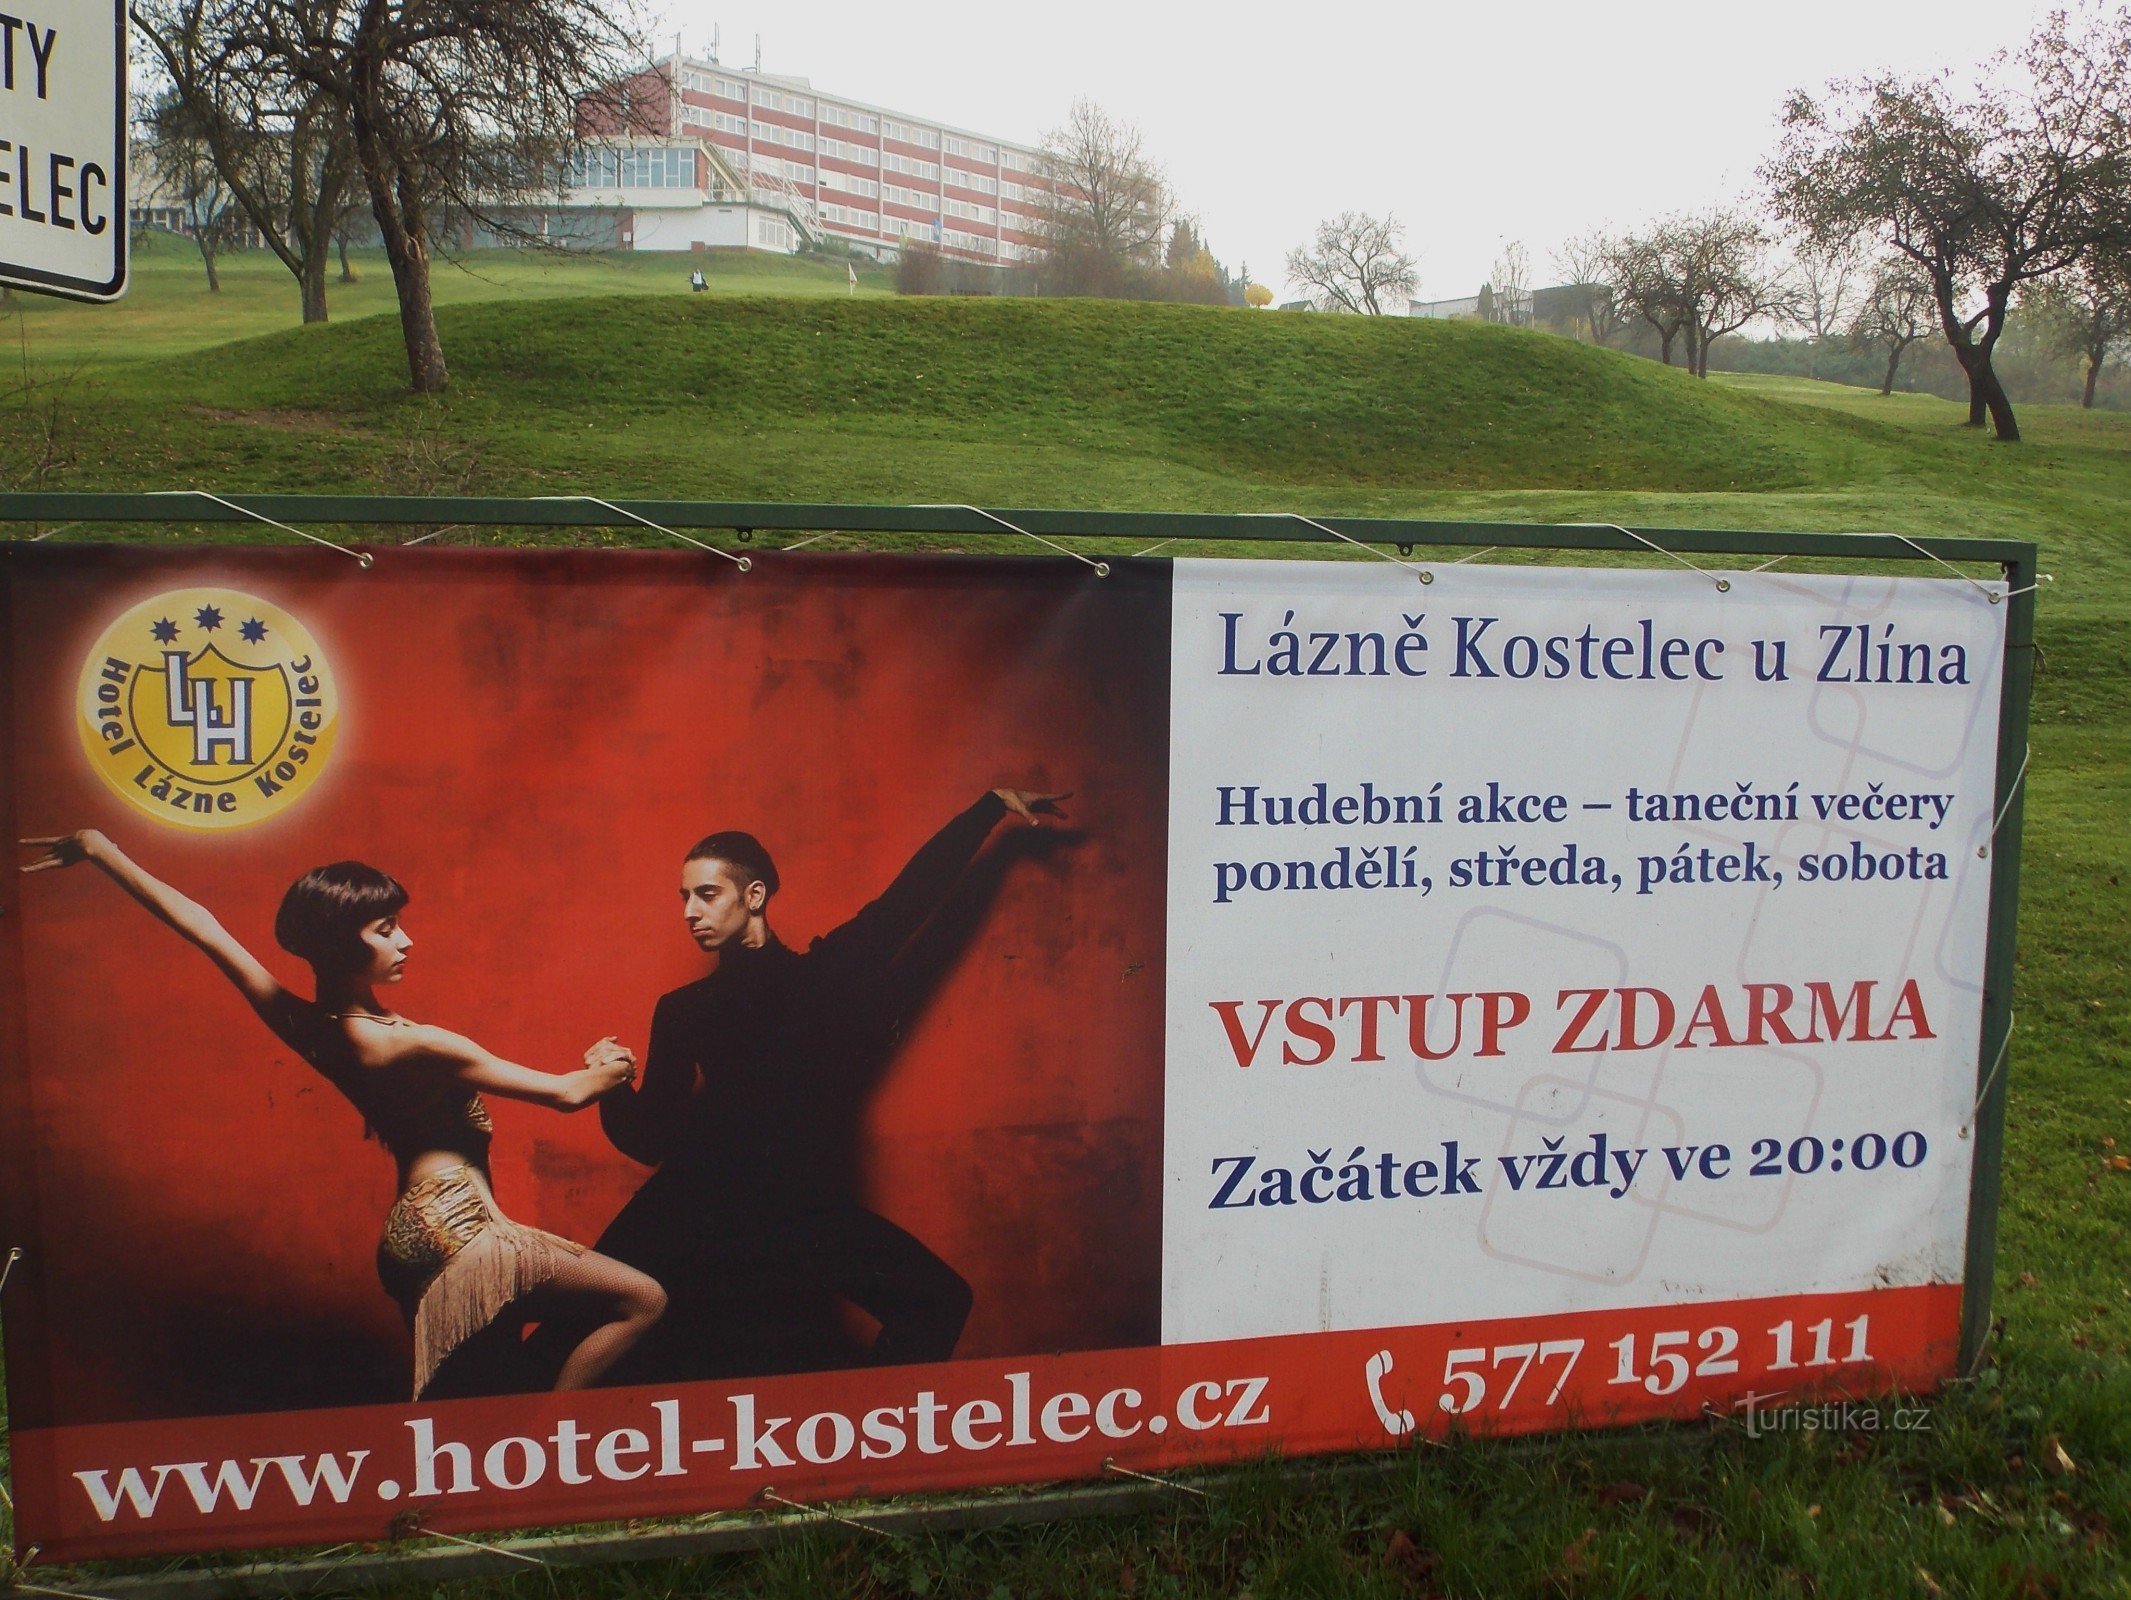 Για υγεία και χαλάρωση, πηγαίνετε στο σπα Koselec κοντά στο Zlín